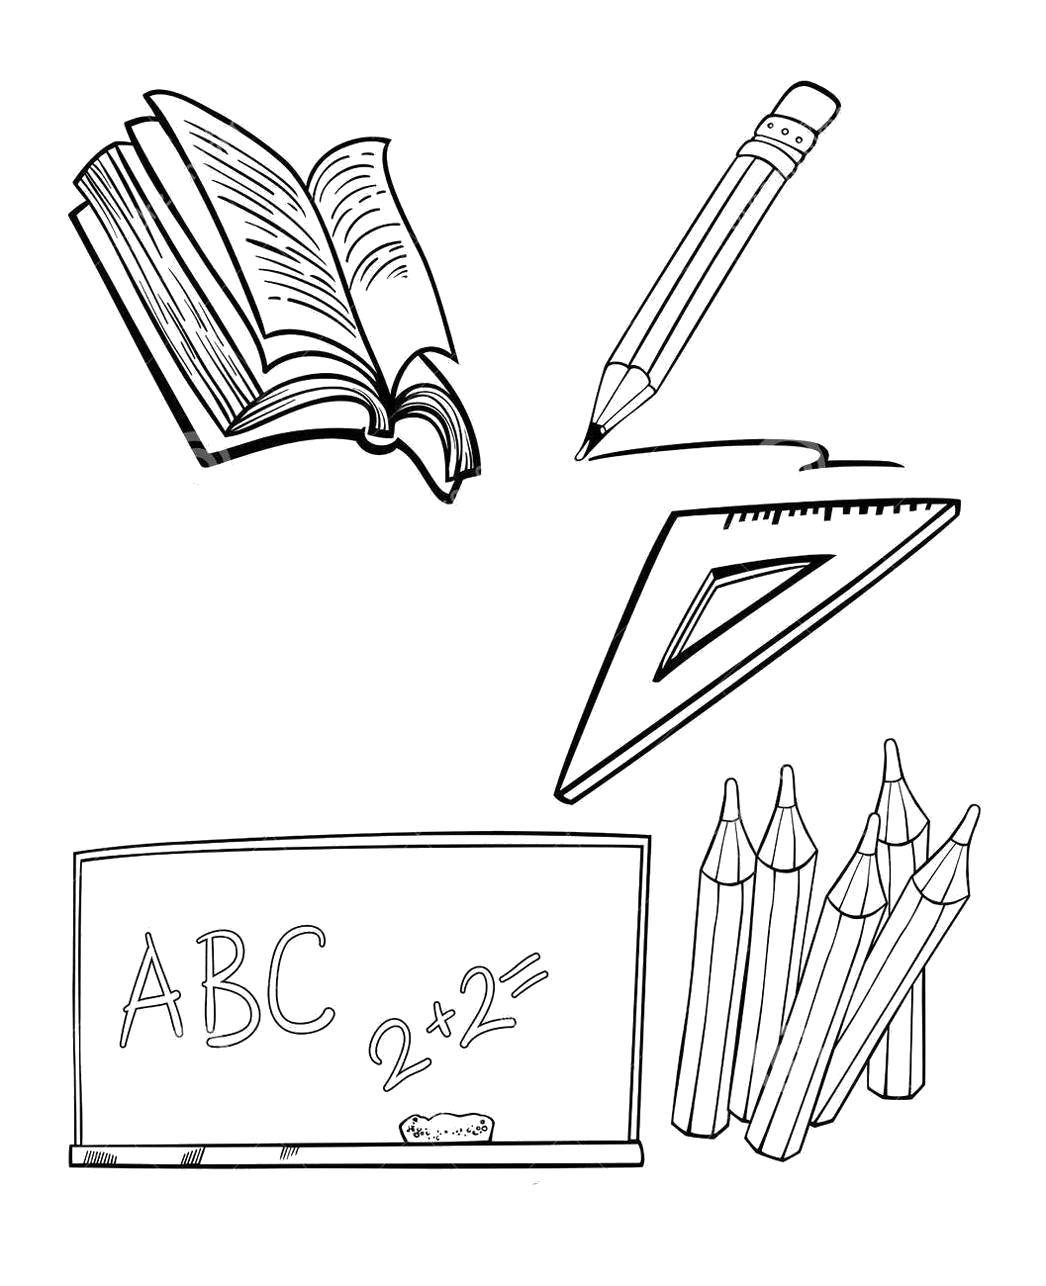 Название: Раскраска Школьные принадлежности. Категория: школа. Теги: Школа, тетради, ручки, книги, принадлежности.